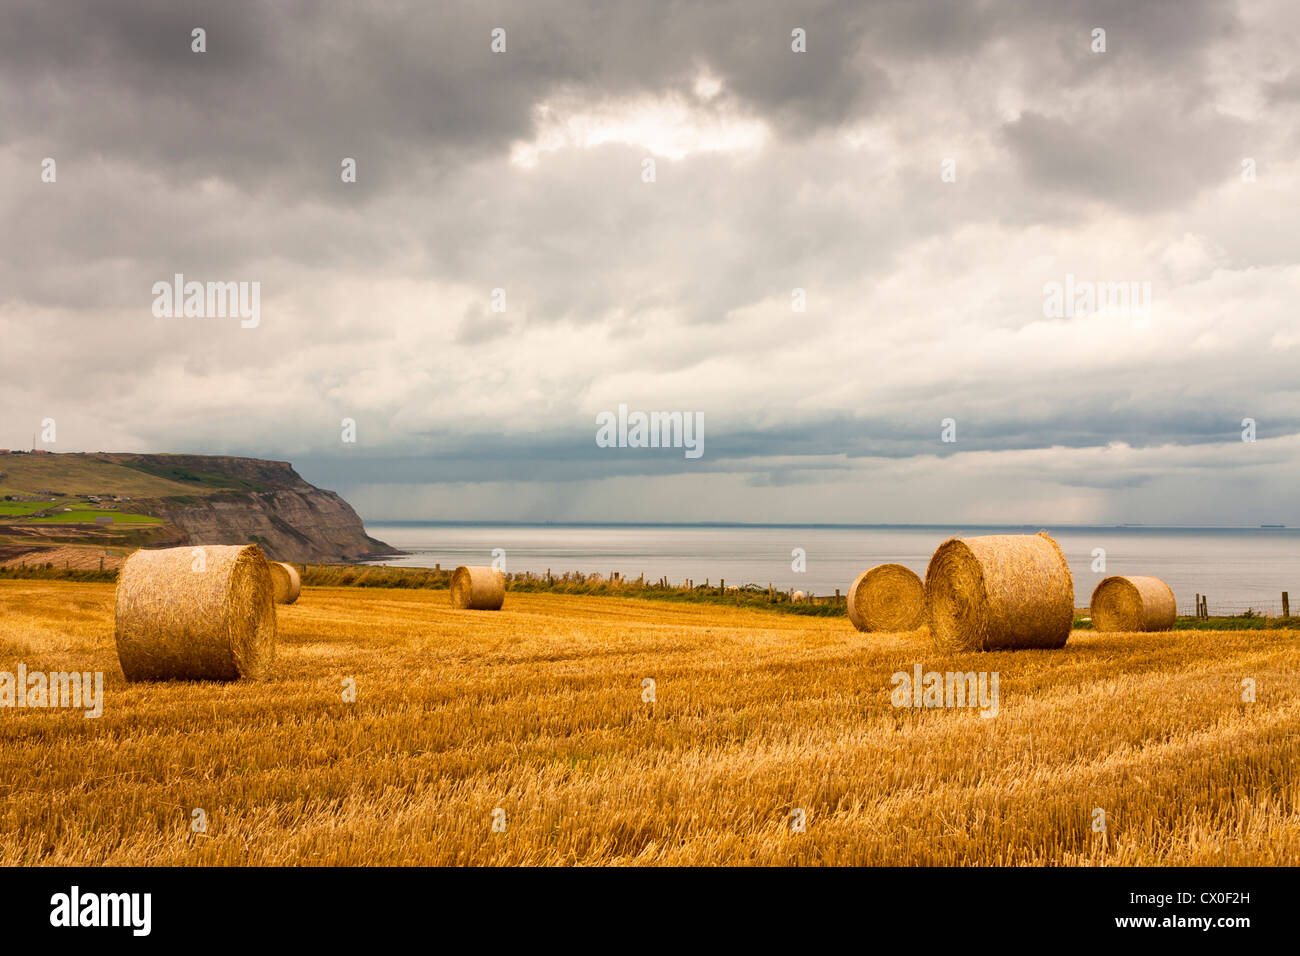 Appena raccolto campo con stoppie di grano e balle di paglia nella campagna inglese con Boulby Cliff in background. Foto Stock